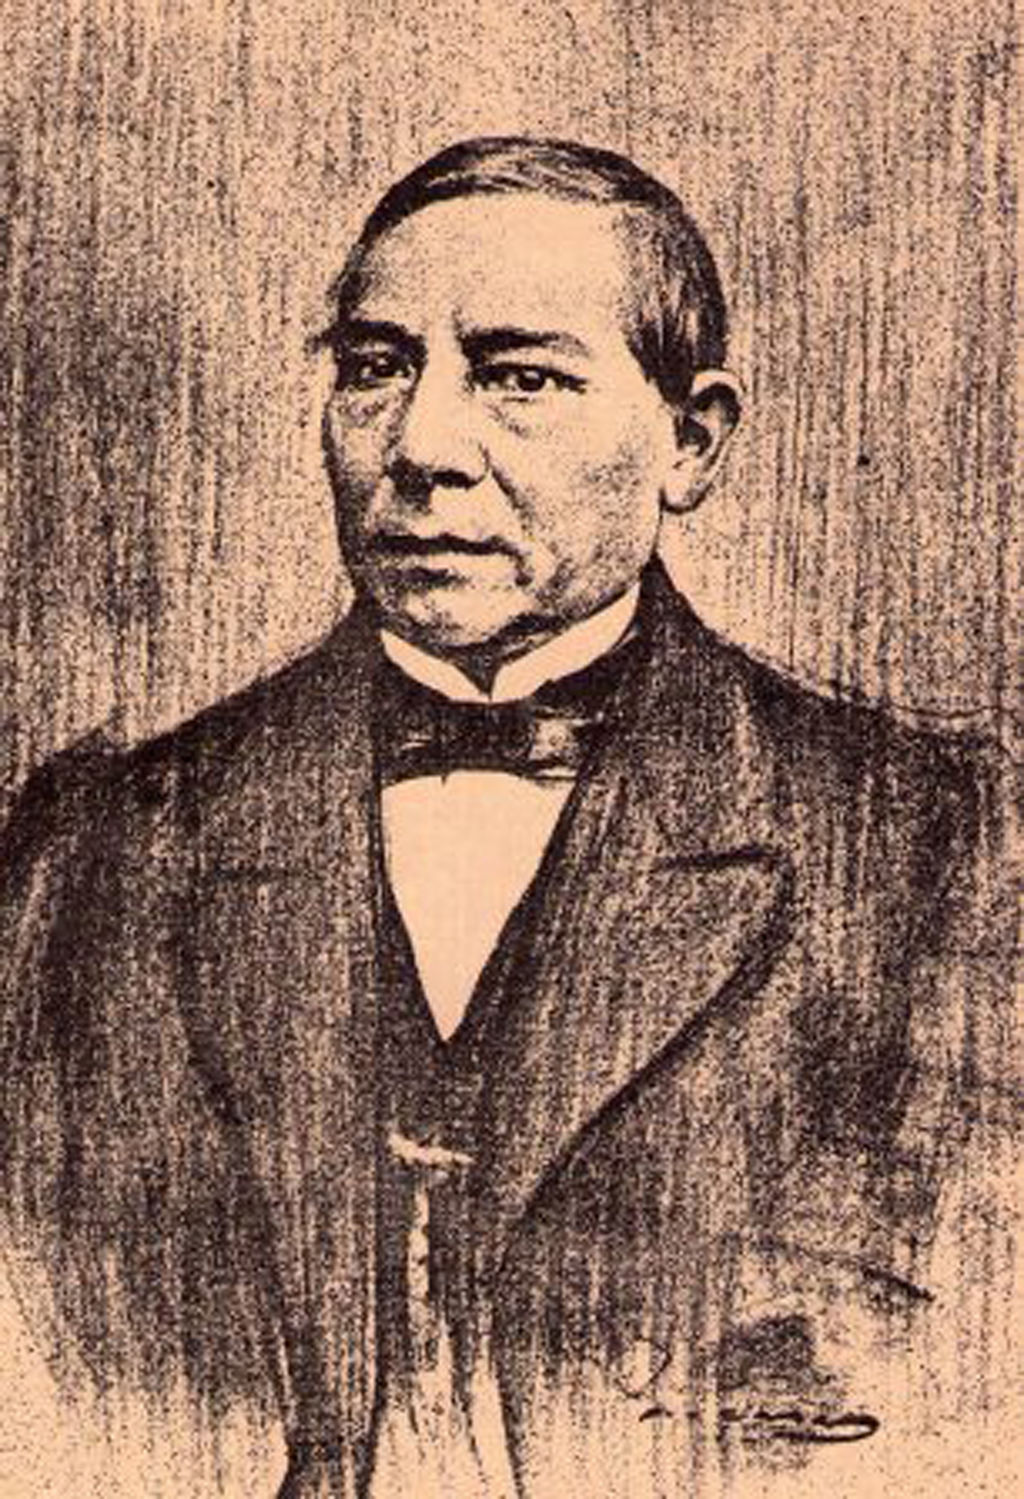 Lic. Benito Juárez G. pernoctó en San Lorenzo rumbo a la Laguna-Chihuahua y Paso del Norte, el 28de agosto de 1864. (De México a Través de los Siglos…)